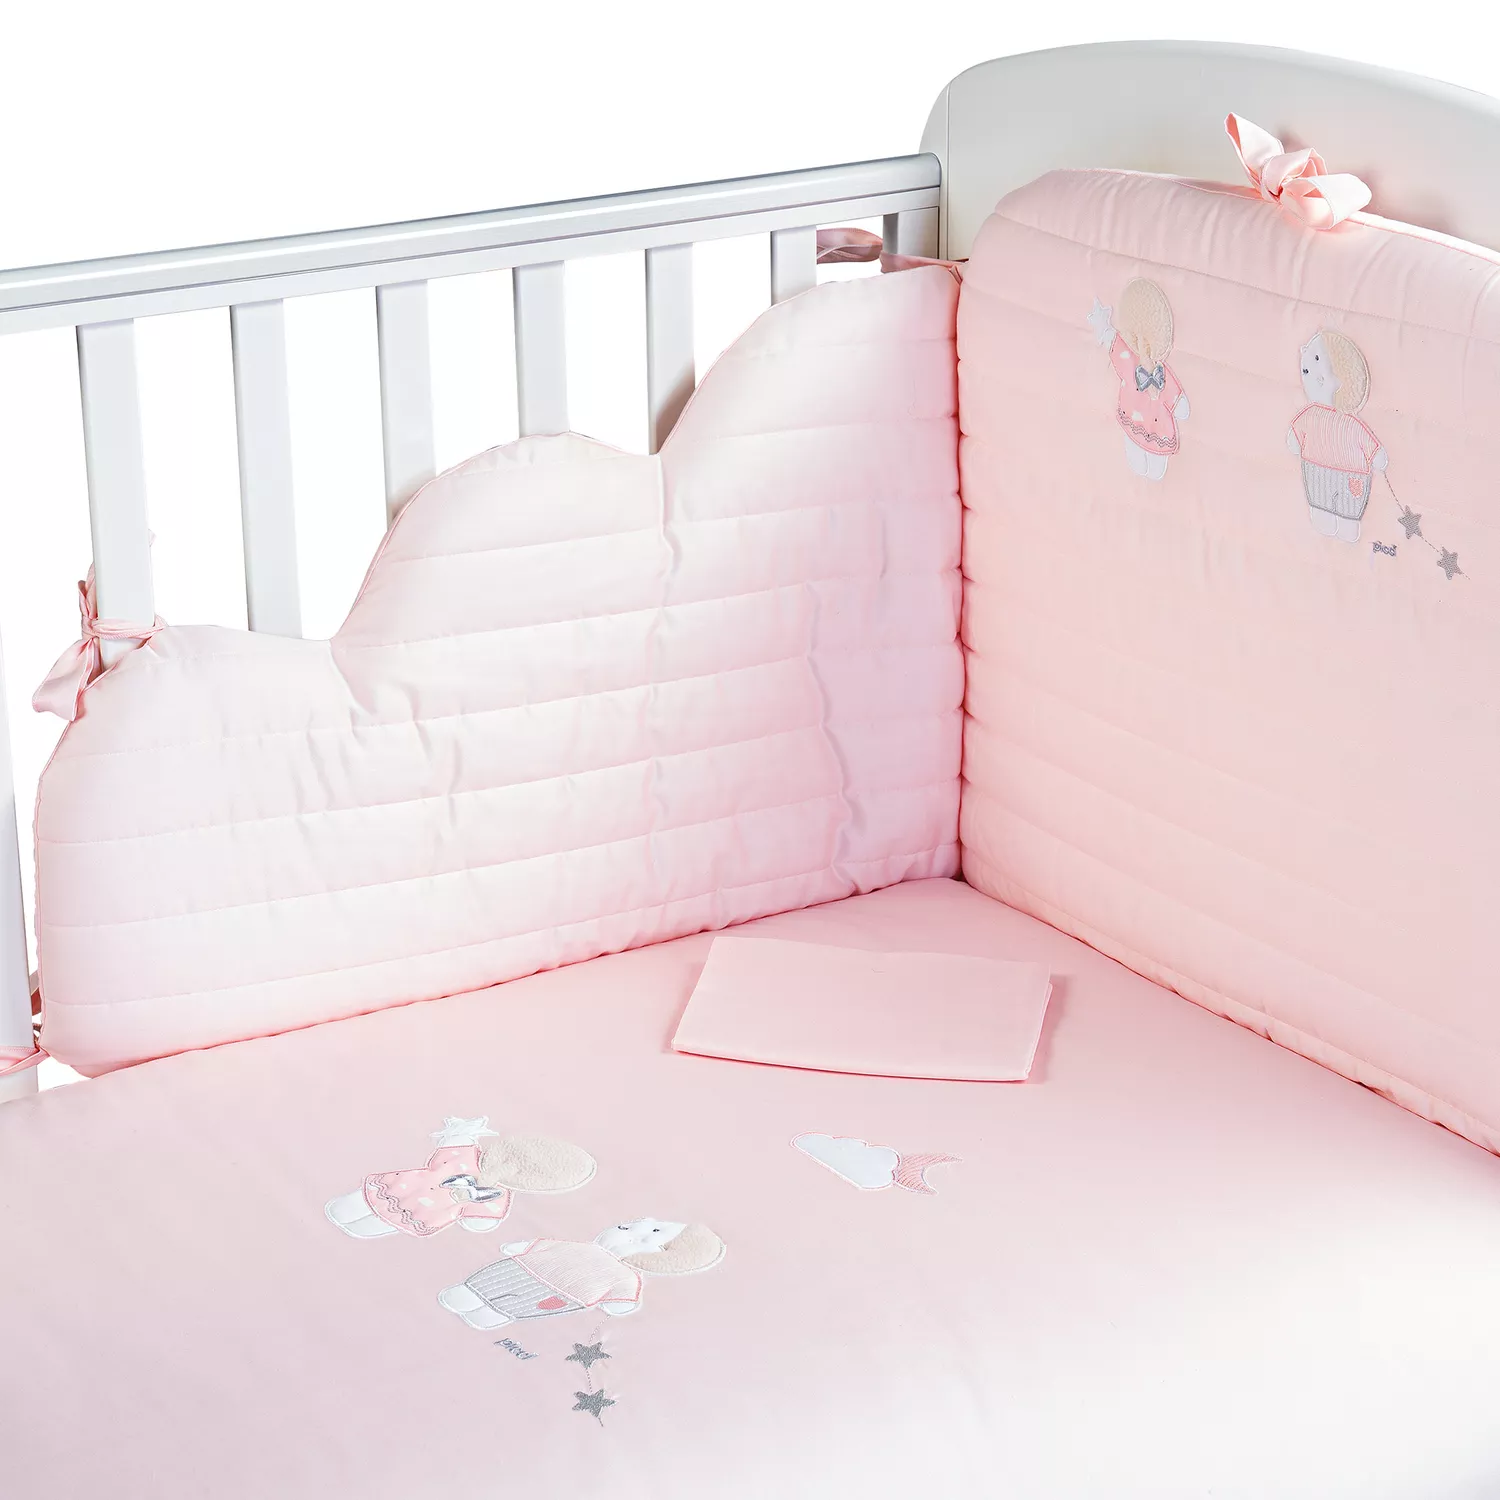 Picci Bed Linens Set Lollipop